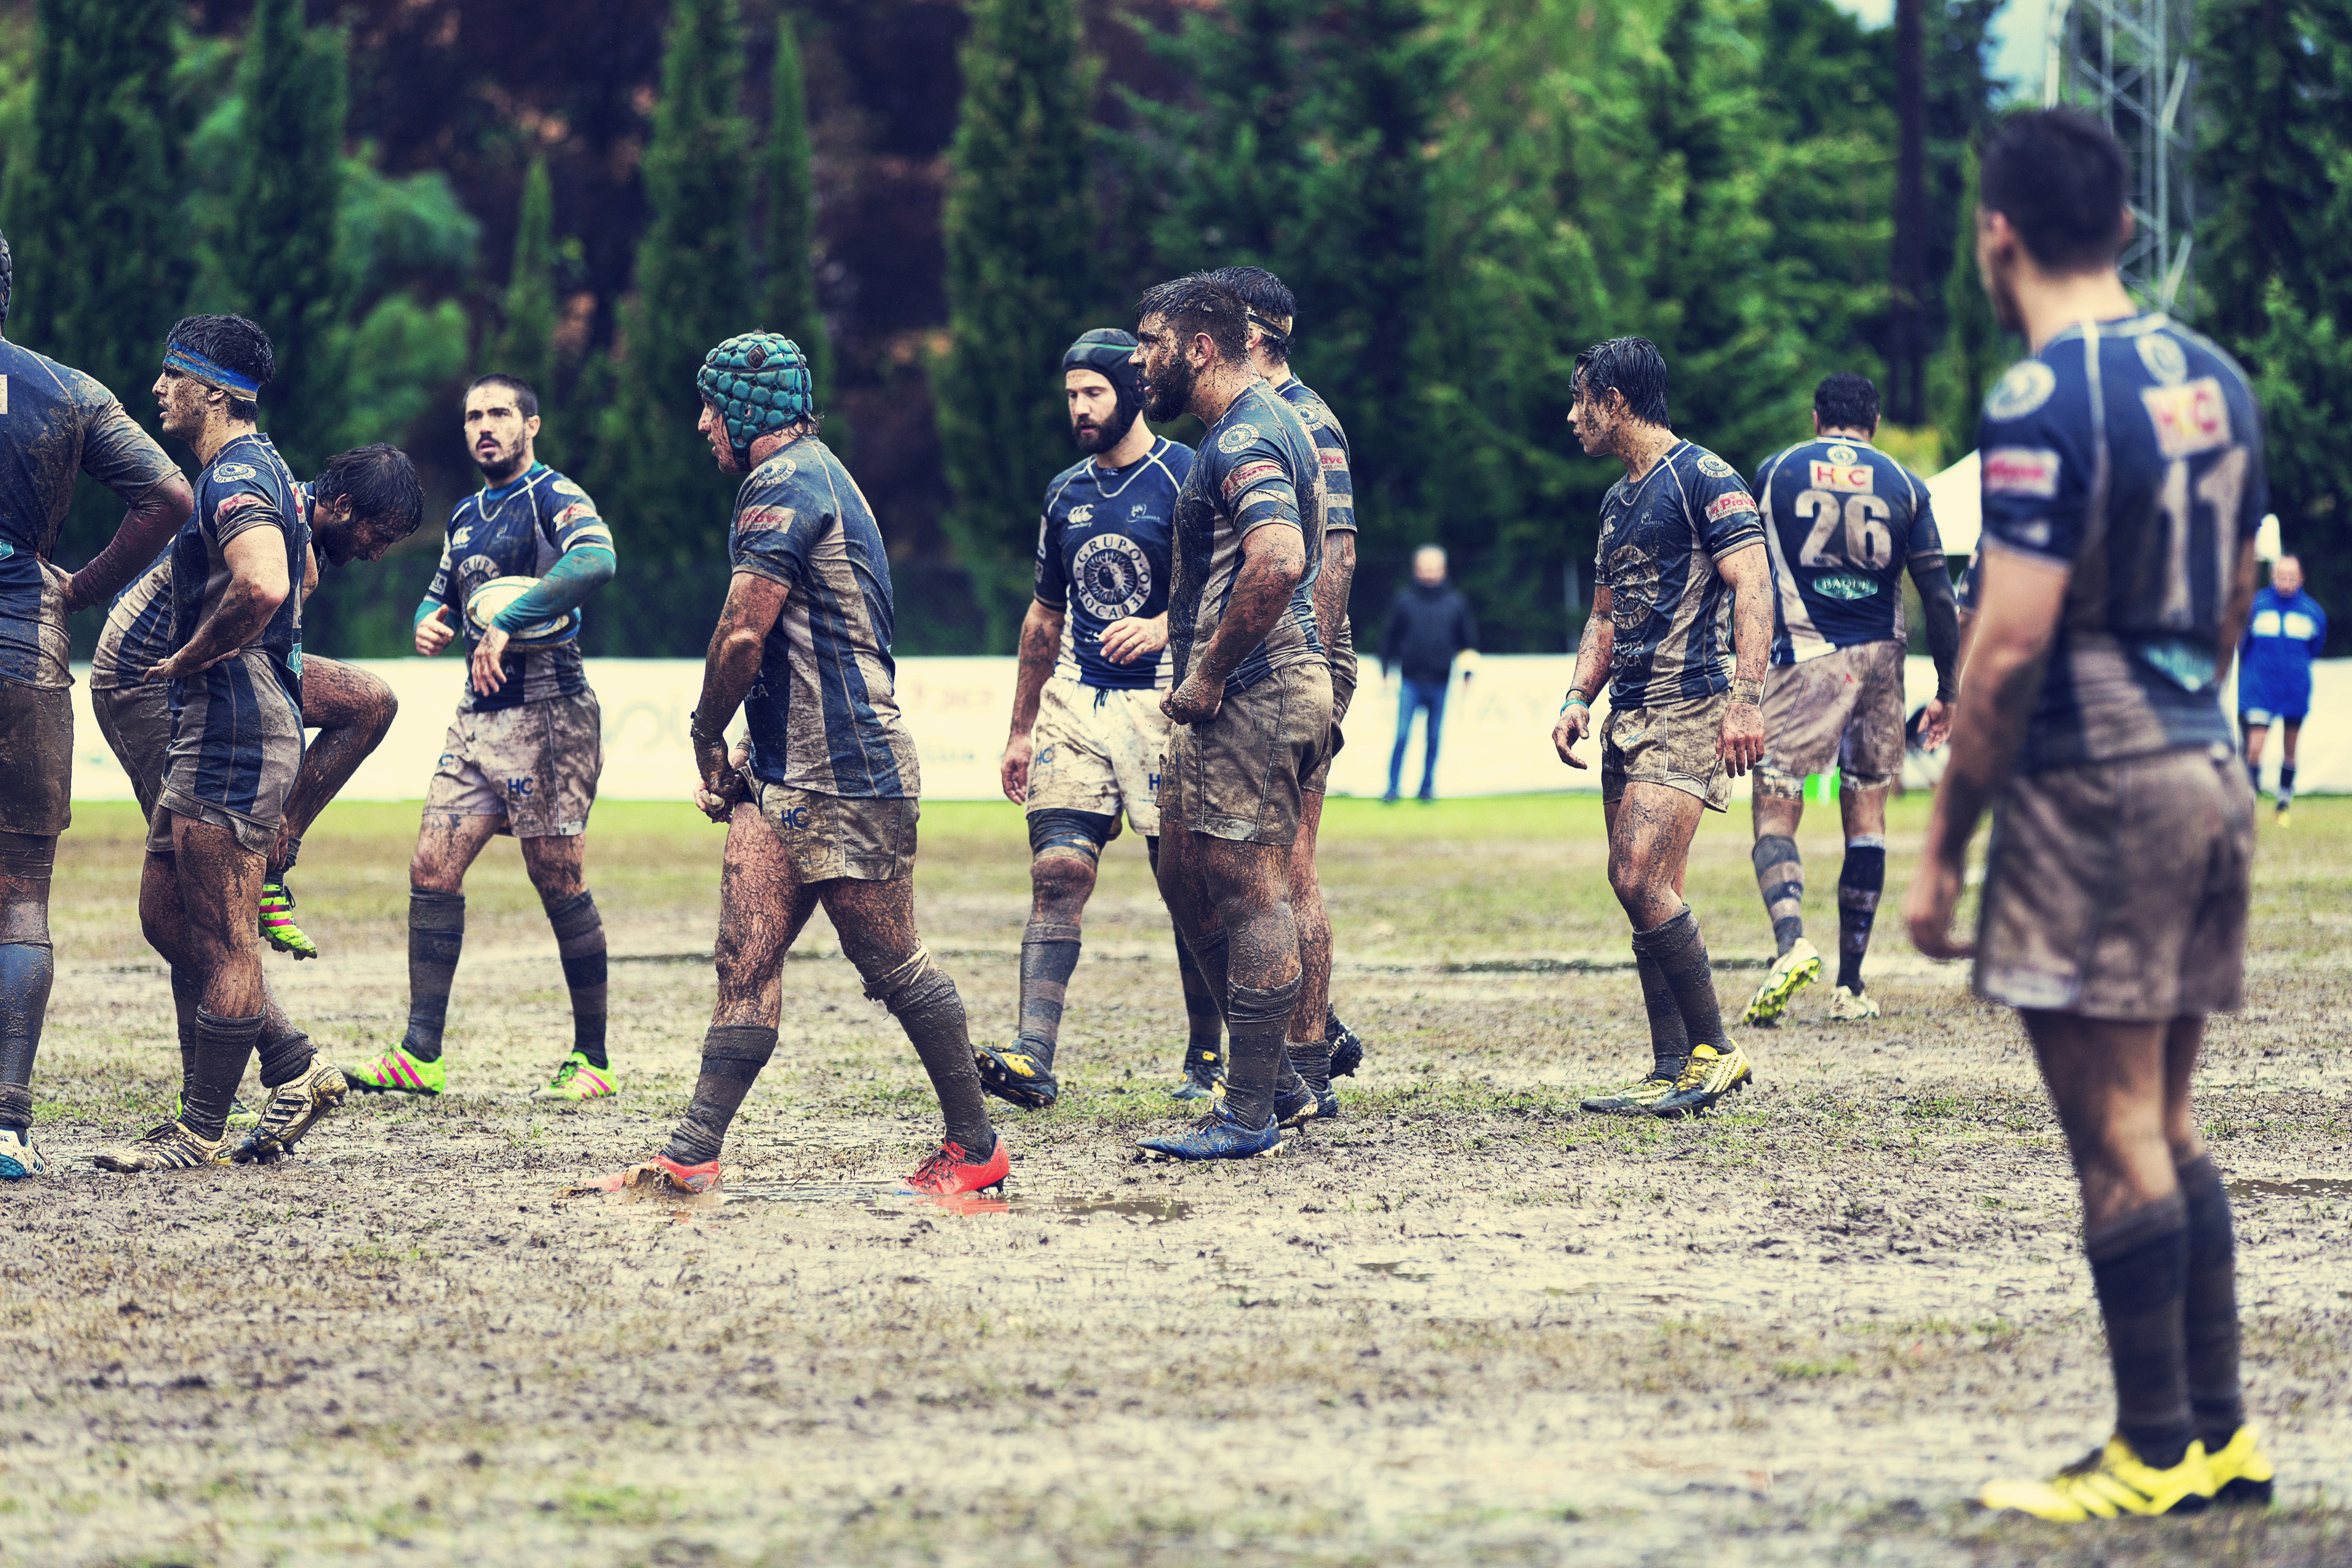 Partido de Rugby jugado bajo una intensa lluvia el dia 27-11-2016 en el Bahía’s Park de Marbella entre el Trocadero Marbella Rugby Club y el Olímpico Pozuelo Rugby Club.